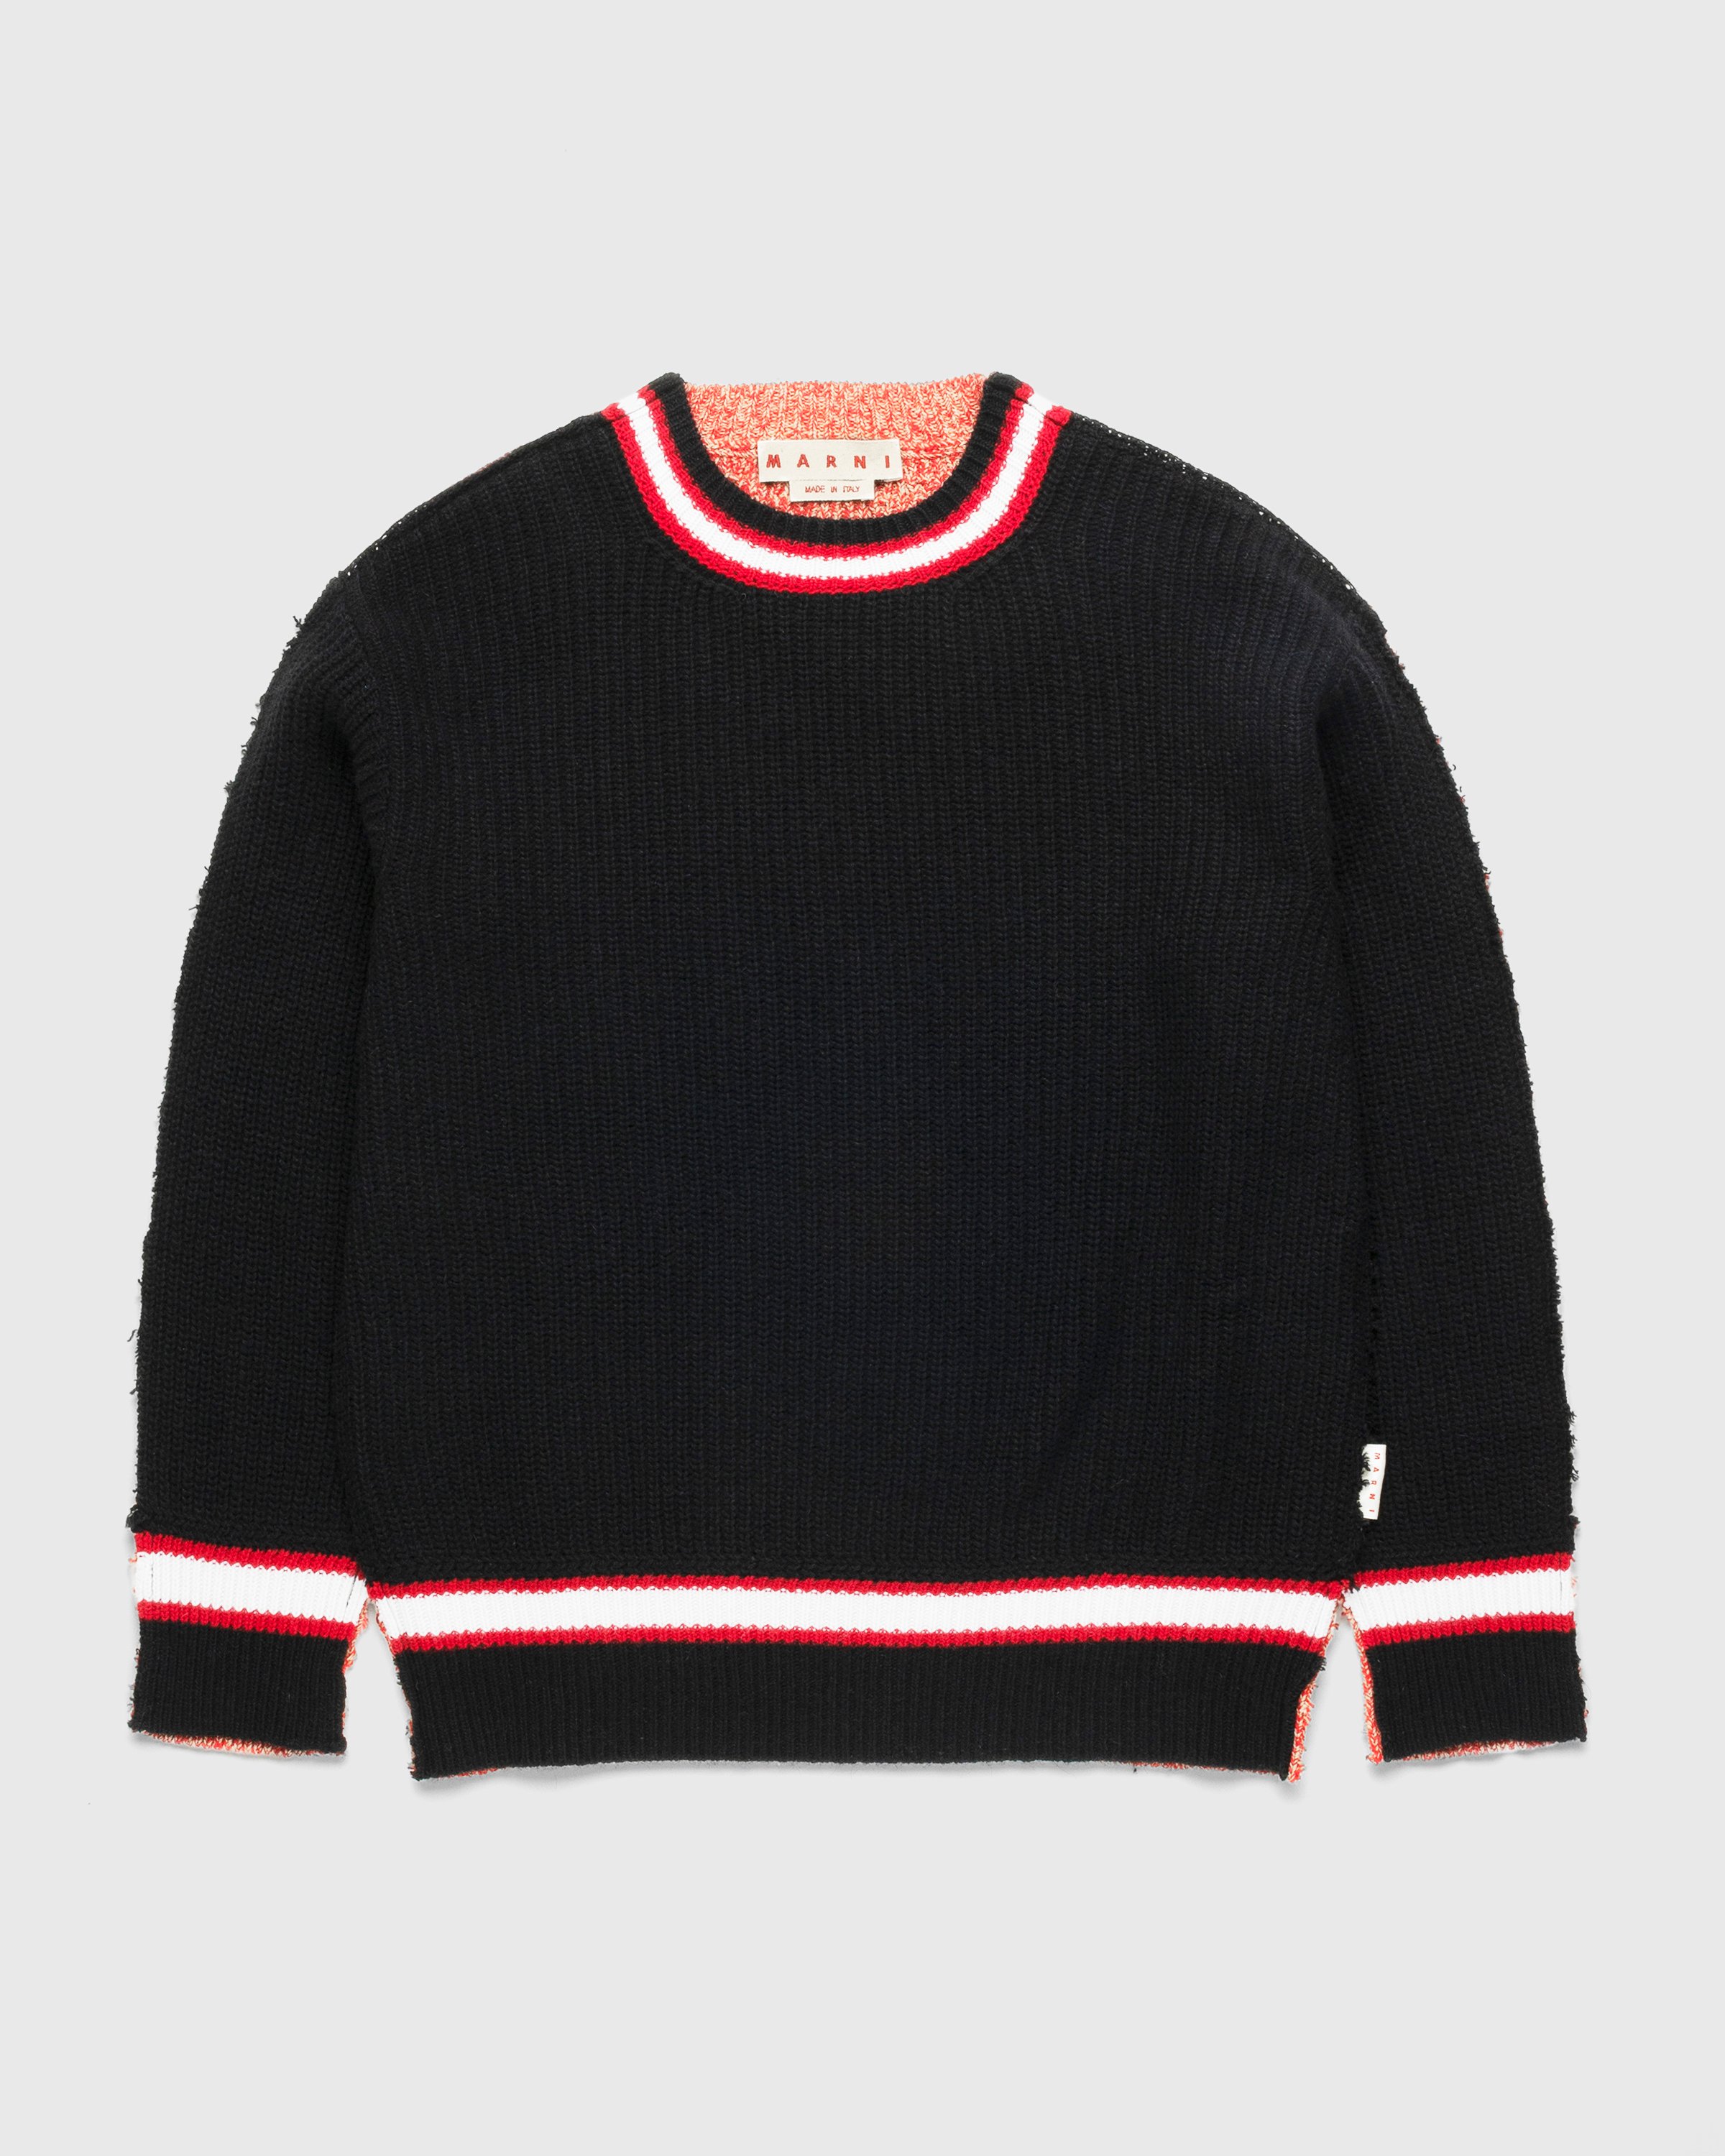 Marni - Roundneck Sweater Black - Clothing - Black - Image 1